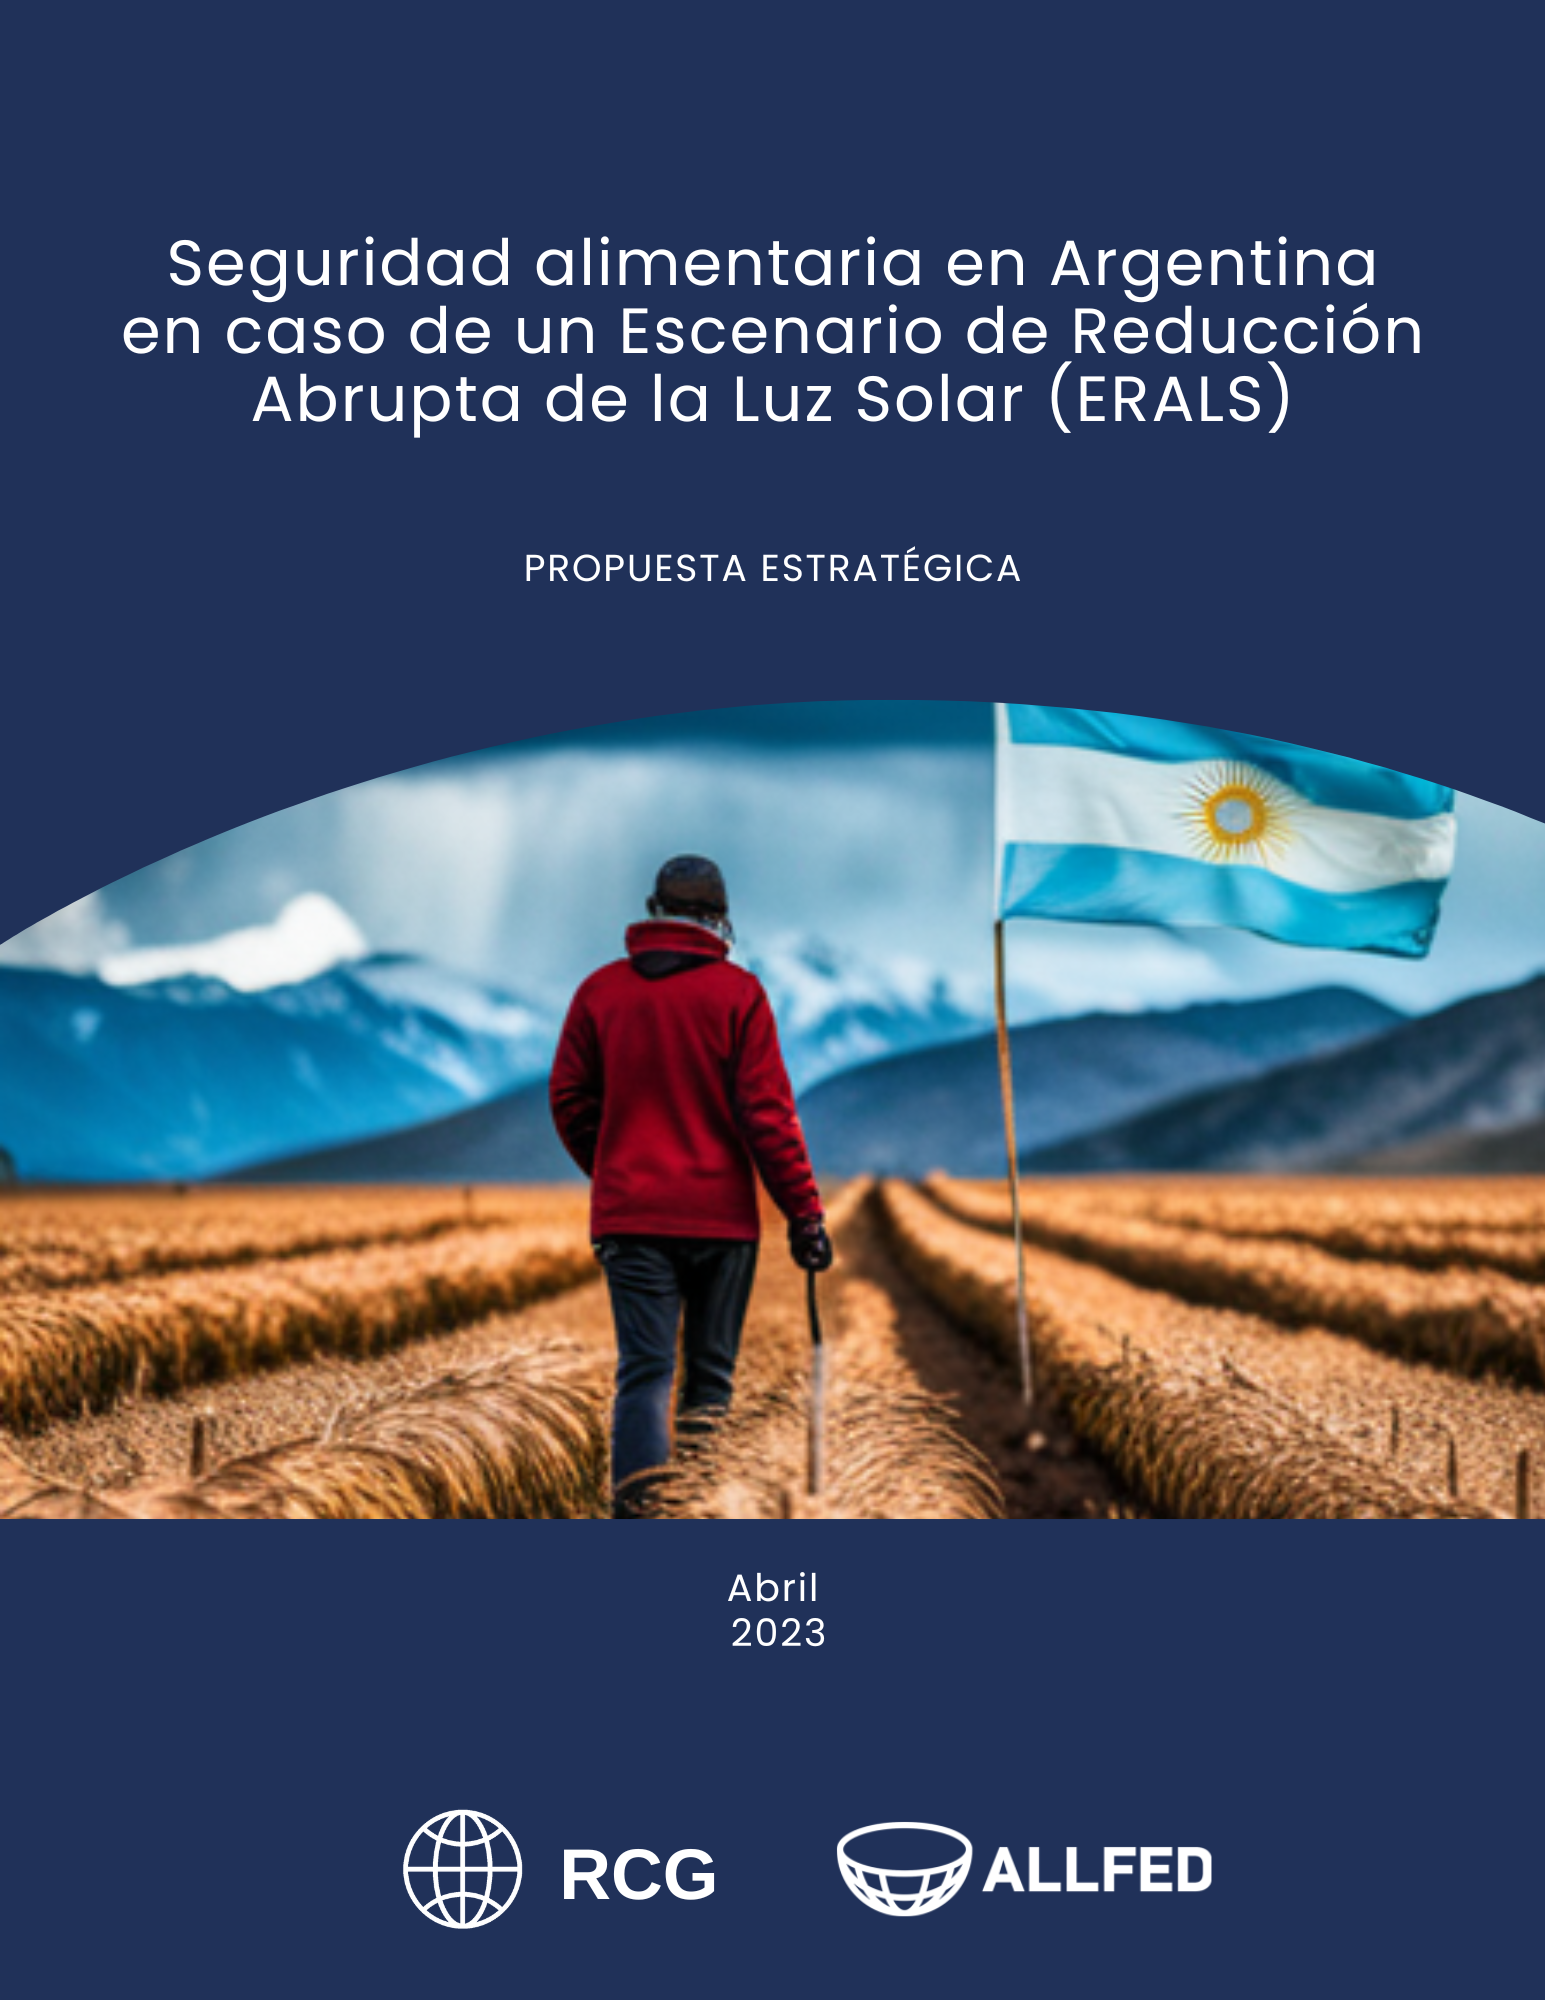 Seguridad alimentaria en Argentina en caso de un Escenario de Reducción Abrupta de la Luz Solar (ERALS).png